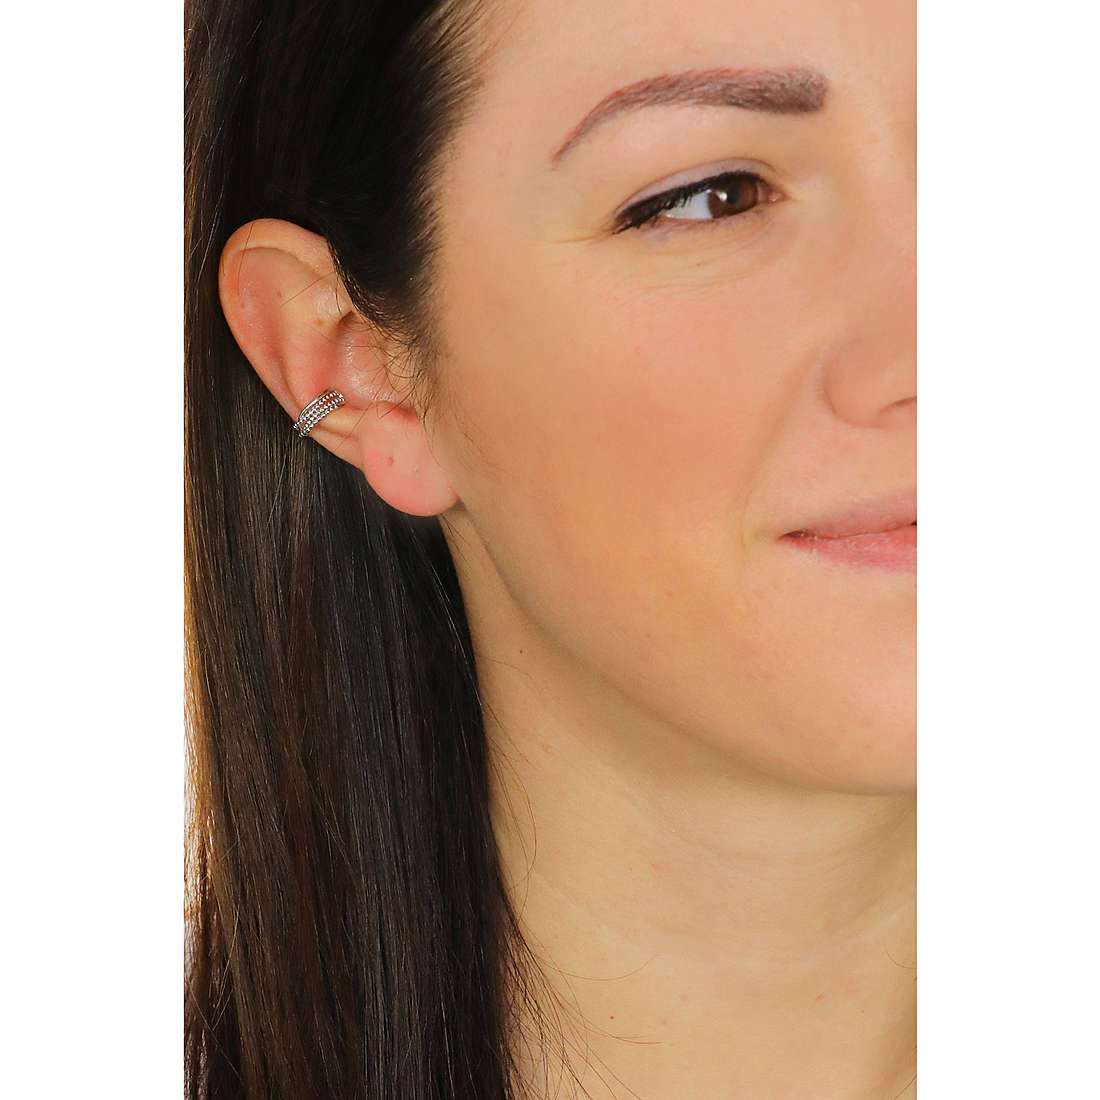 Rebecca earrings Golden ear woman SGEOBB22 wearing